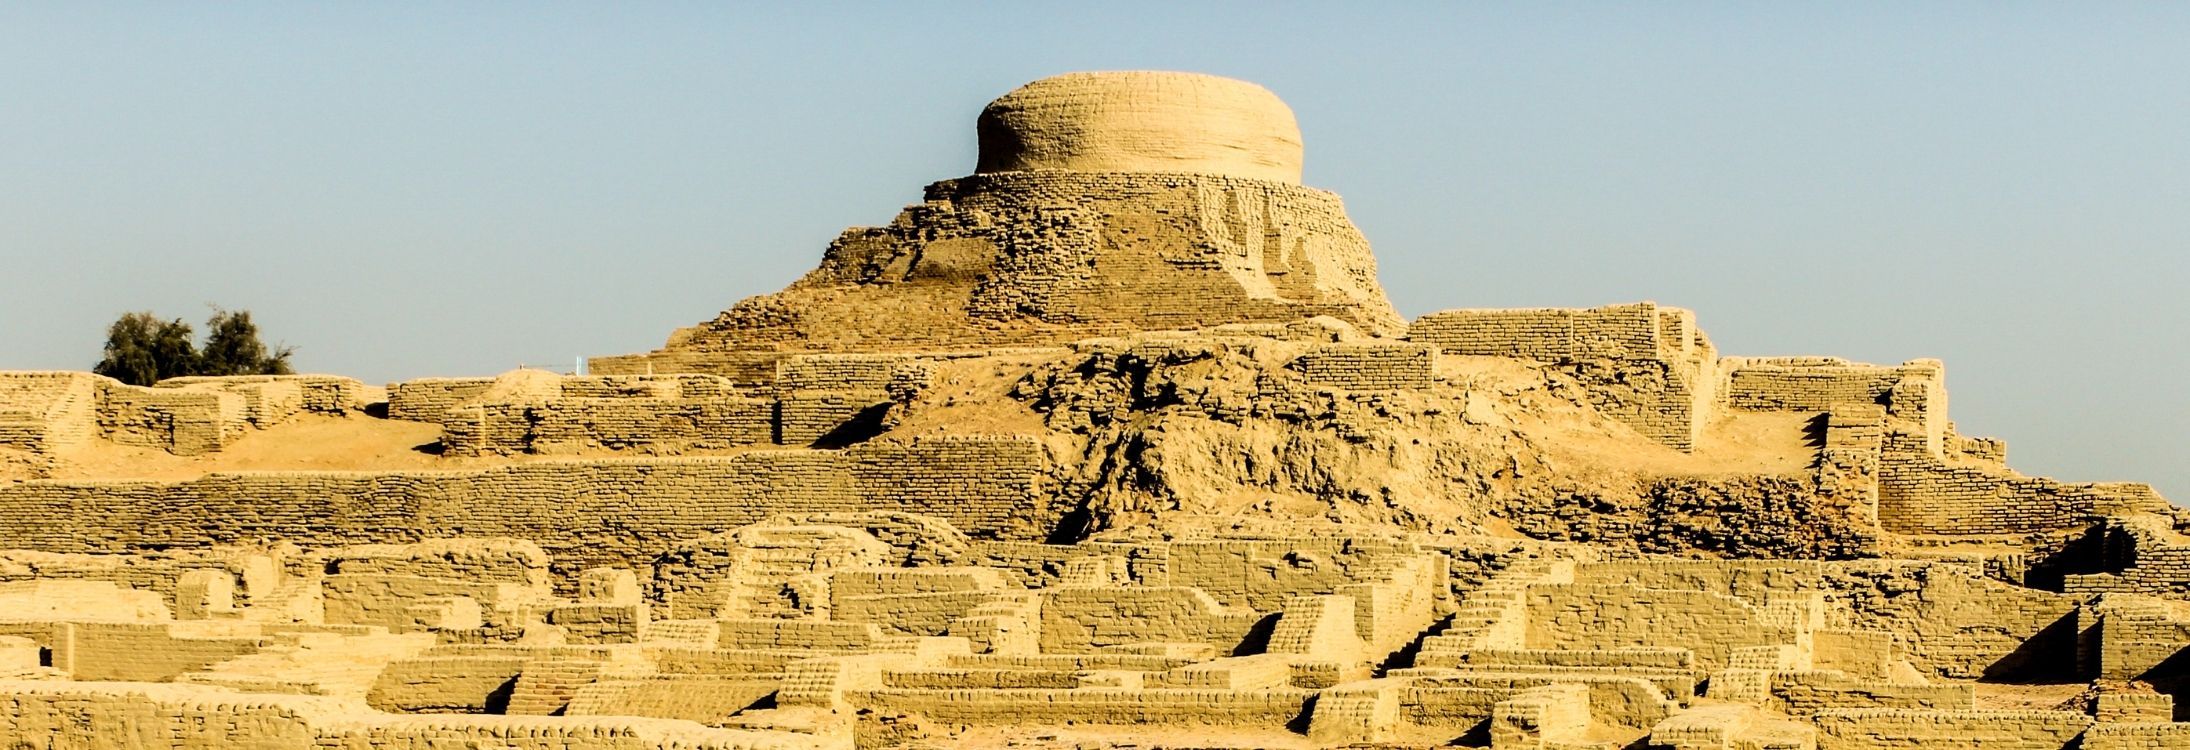 Mohenjo-daro - Mound Of The Dead Comes Alive